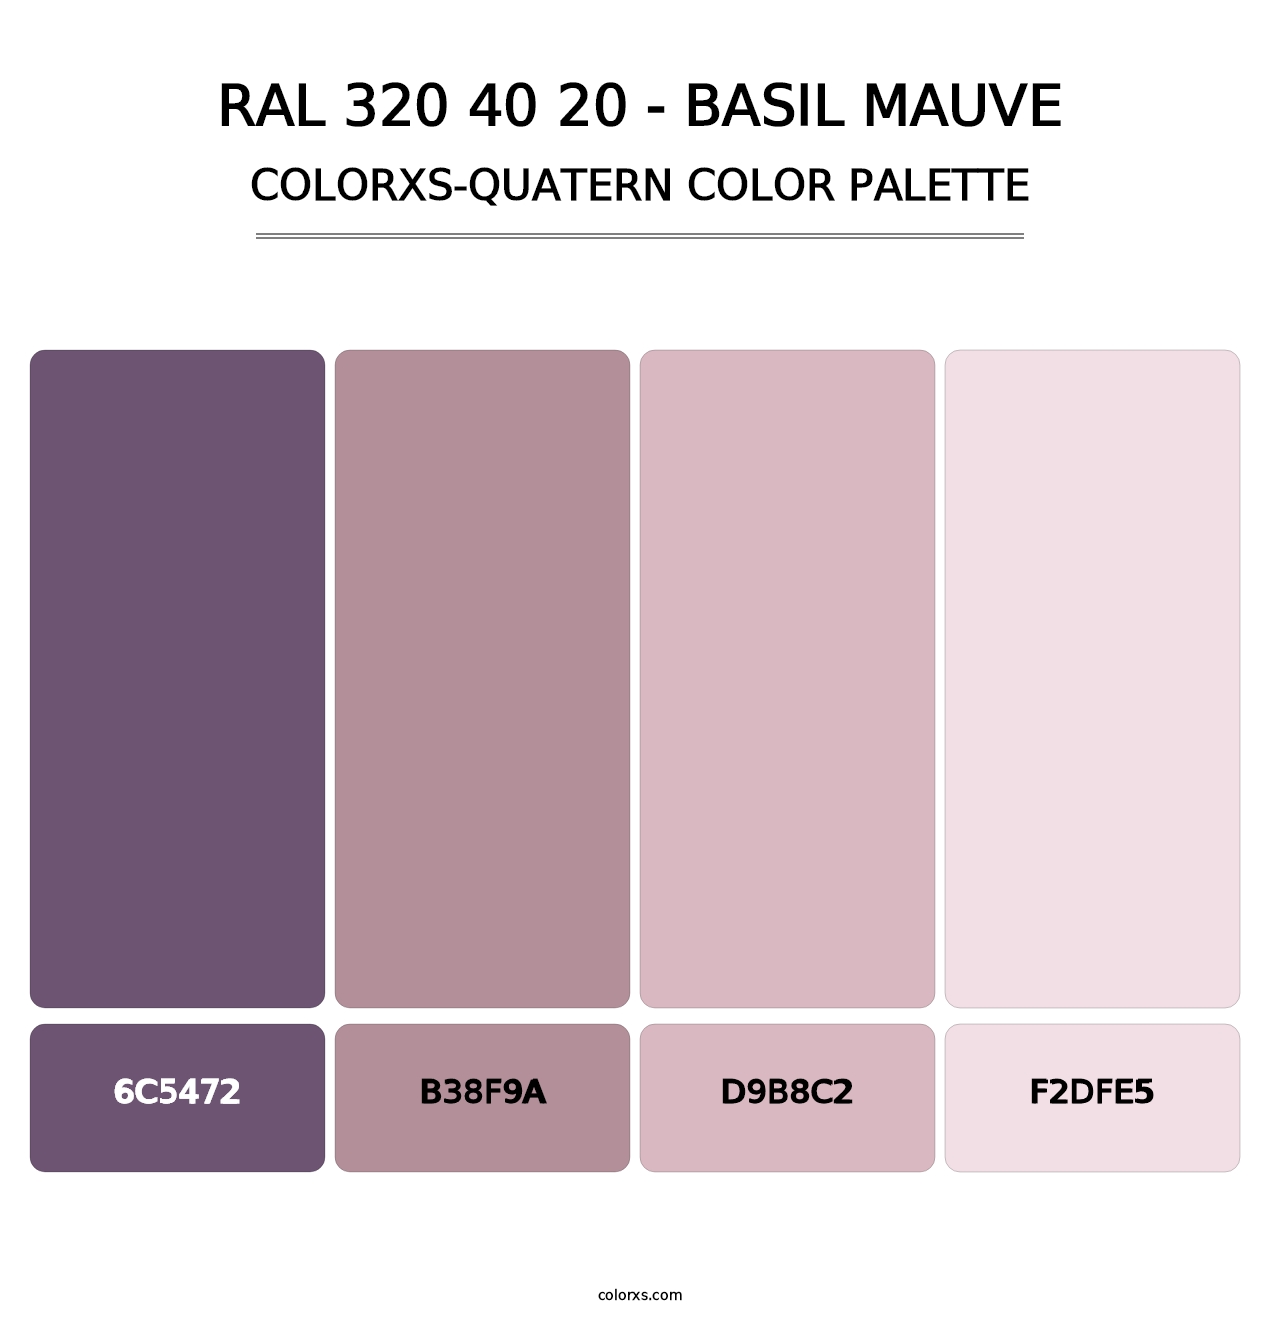 RAL 320 40 20 - Basil Mauve - Colorxs Quatern Palette